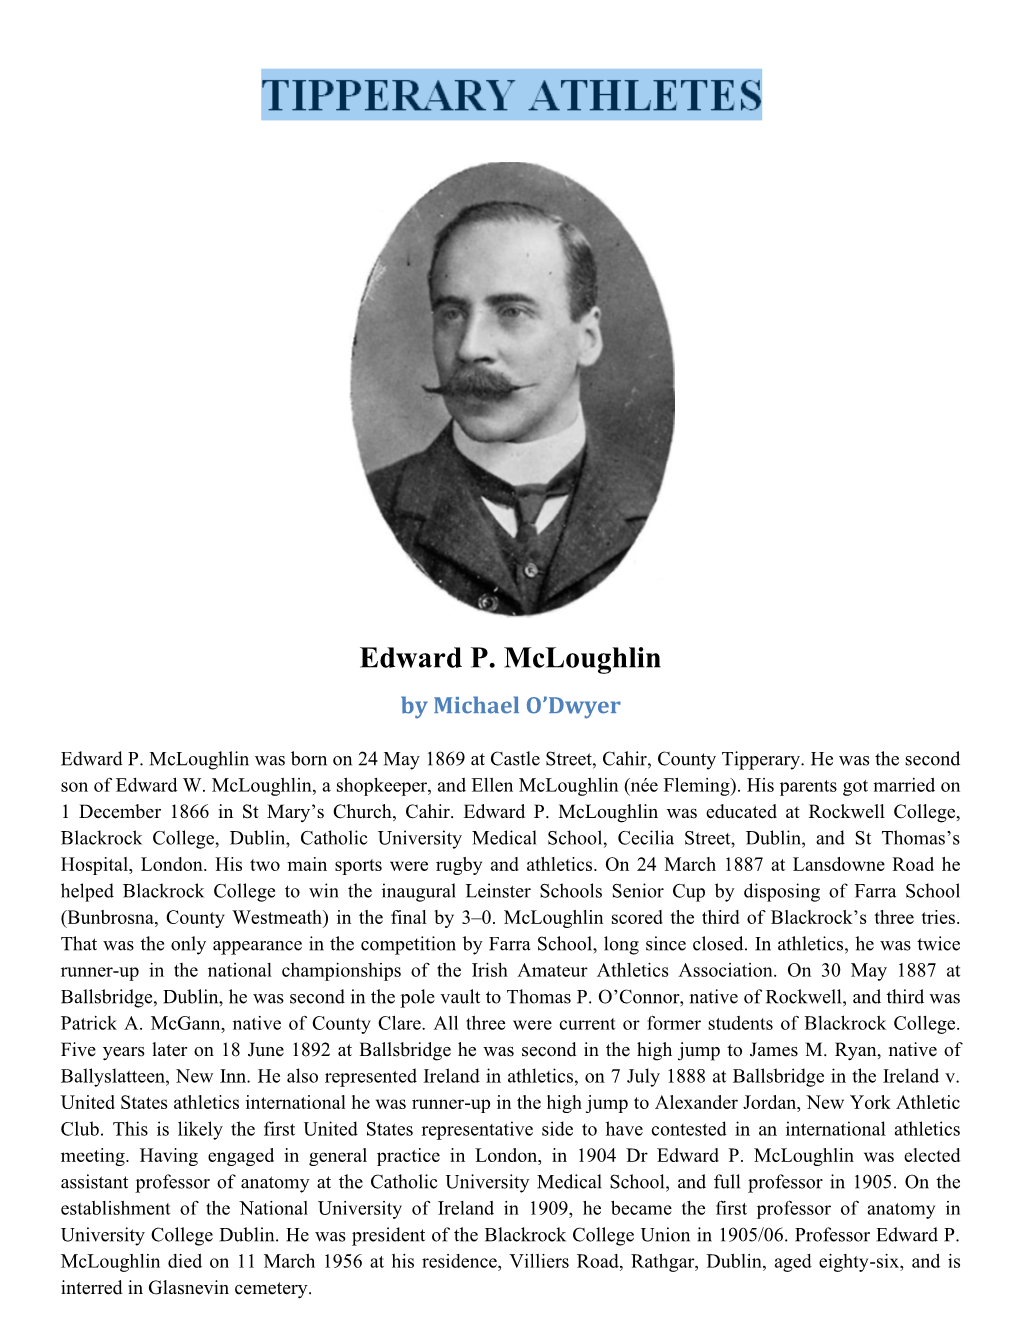 Edward P. Mcloughlin by Michael O’Dwyer